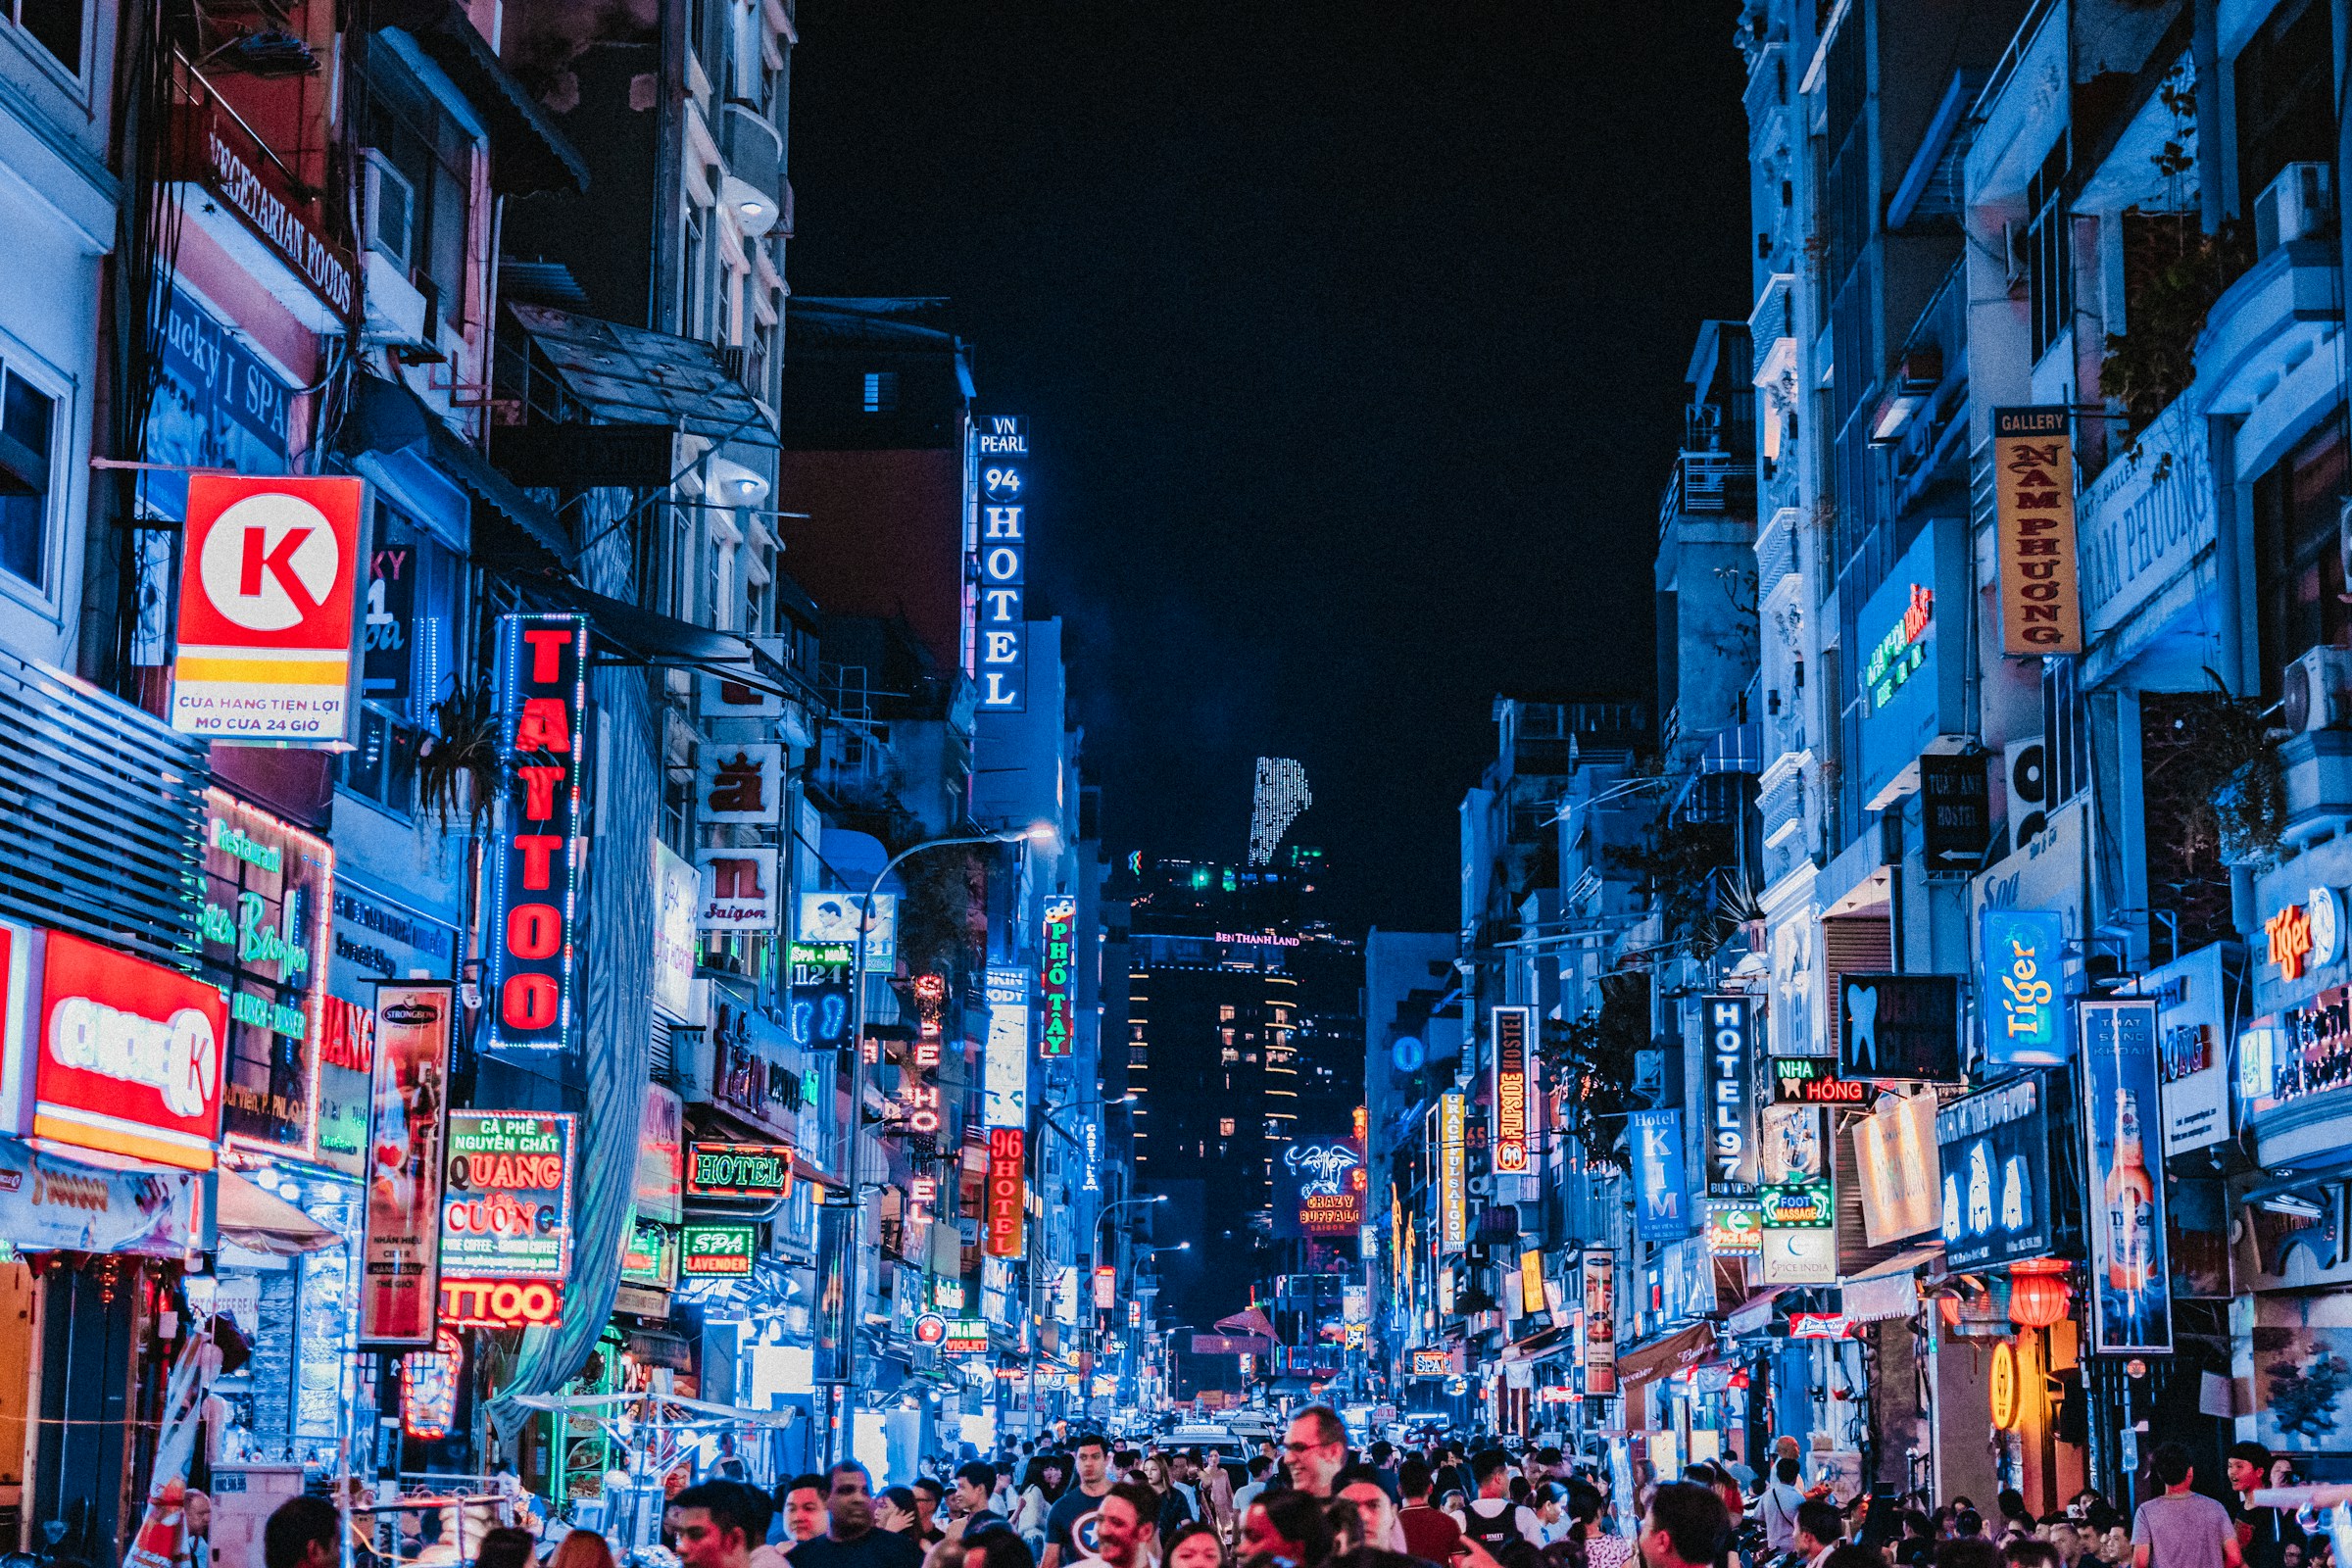 Livlig bygate om kvelden i Ho Chi Minh City med neonlys og skilt, publikum spaserer i storbyatmosfære.